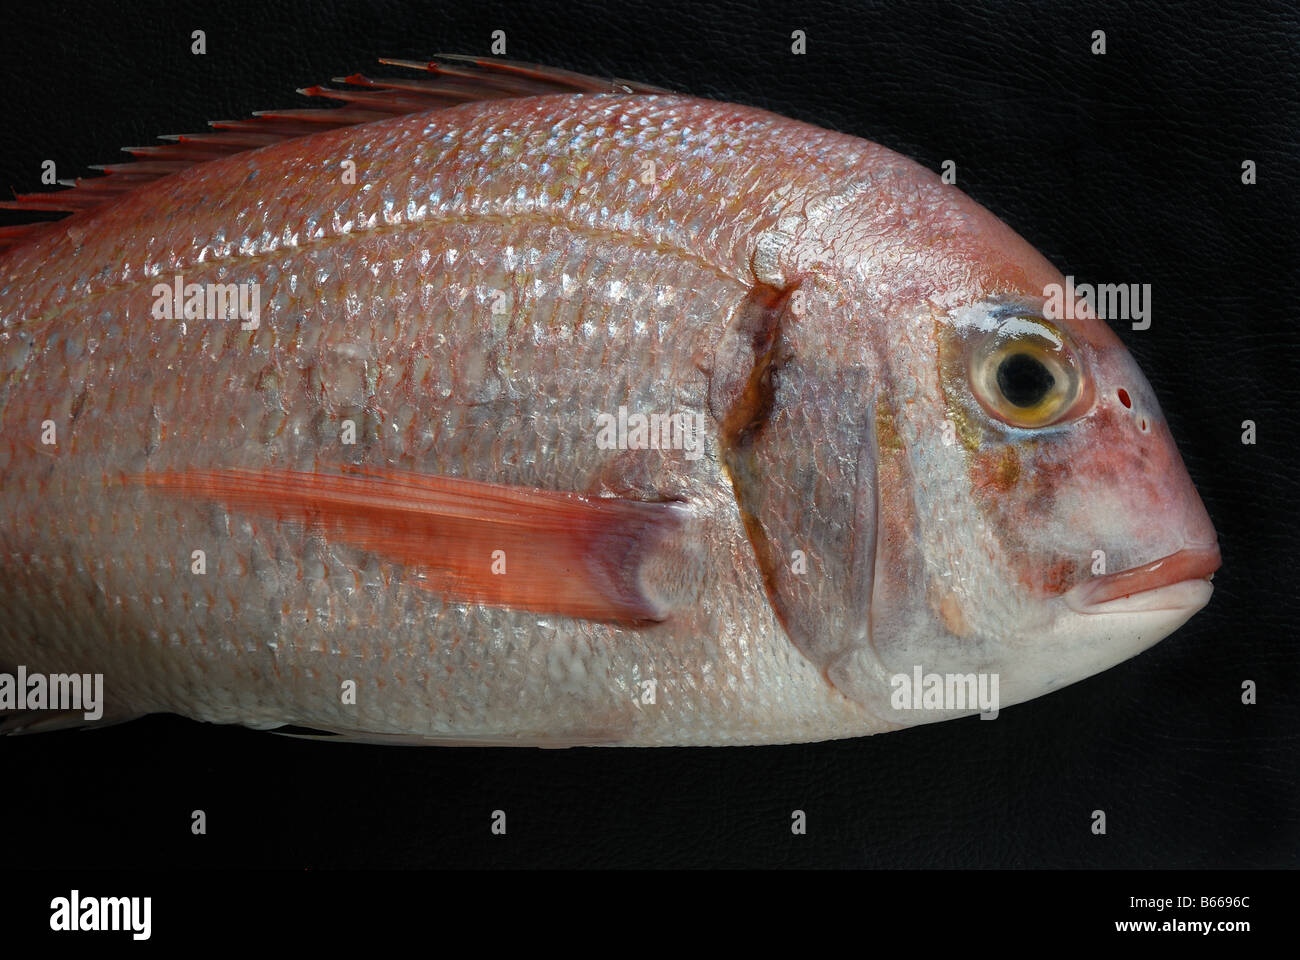 Eine rote Porgy (Pagrus Pagrus) auch bekannt als rote oder gemeinsame Goldbrasse, eine Fischart in der Familie der Sparidae. Stockfoto